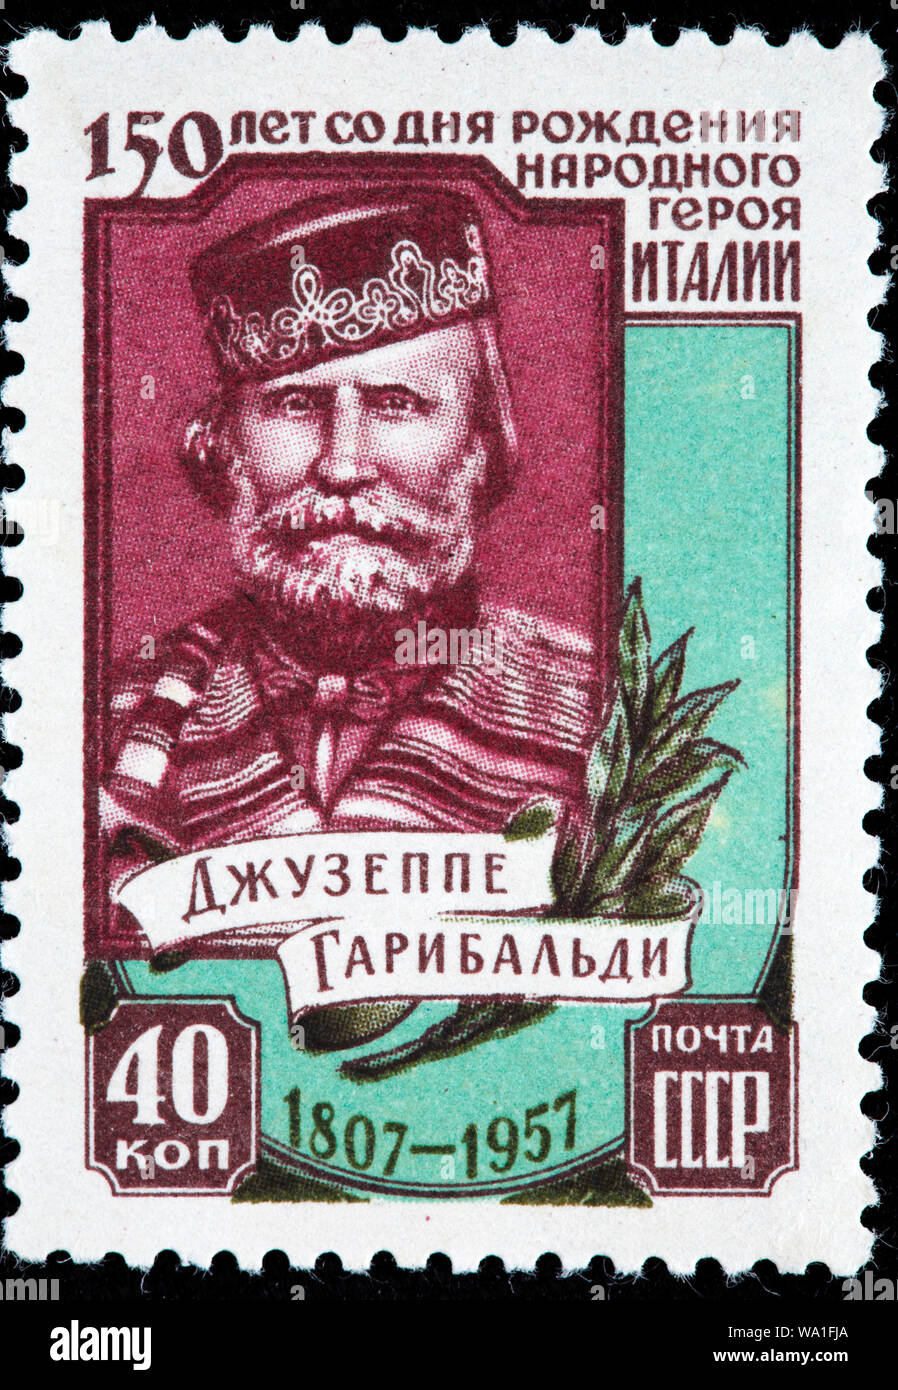 Giuseppe Garibaldi (1807-1882), général italien, timbre-poste, Russie, URSS, 1957 Banque D'Images